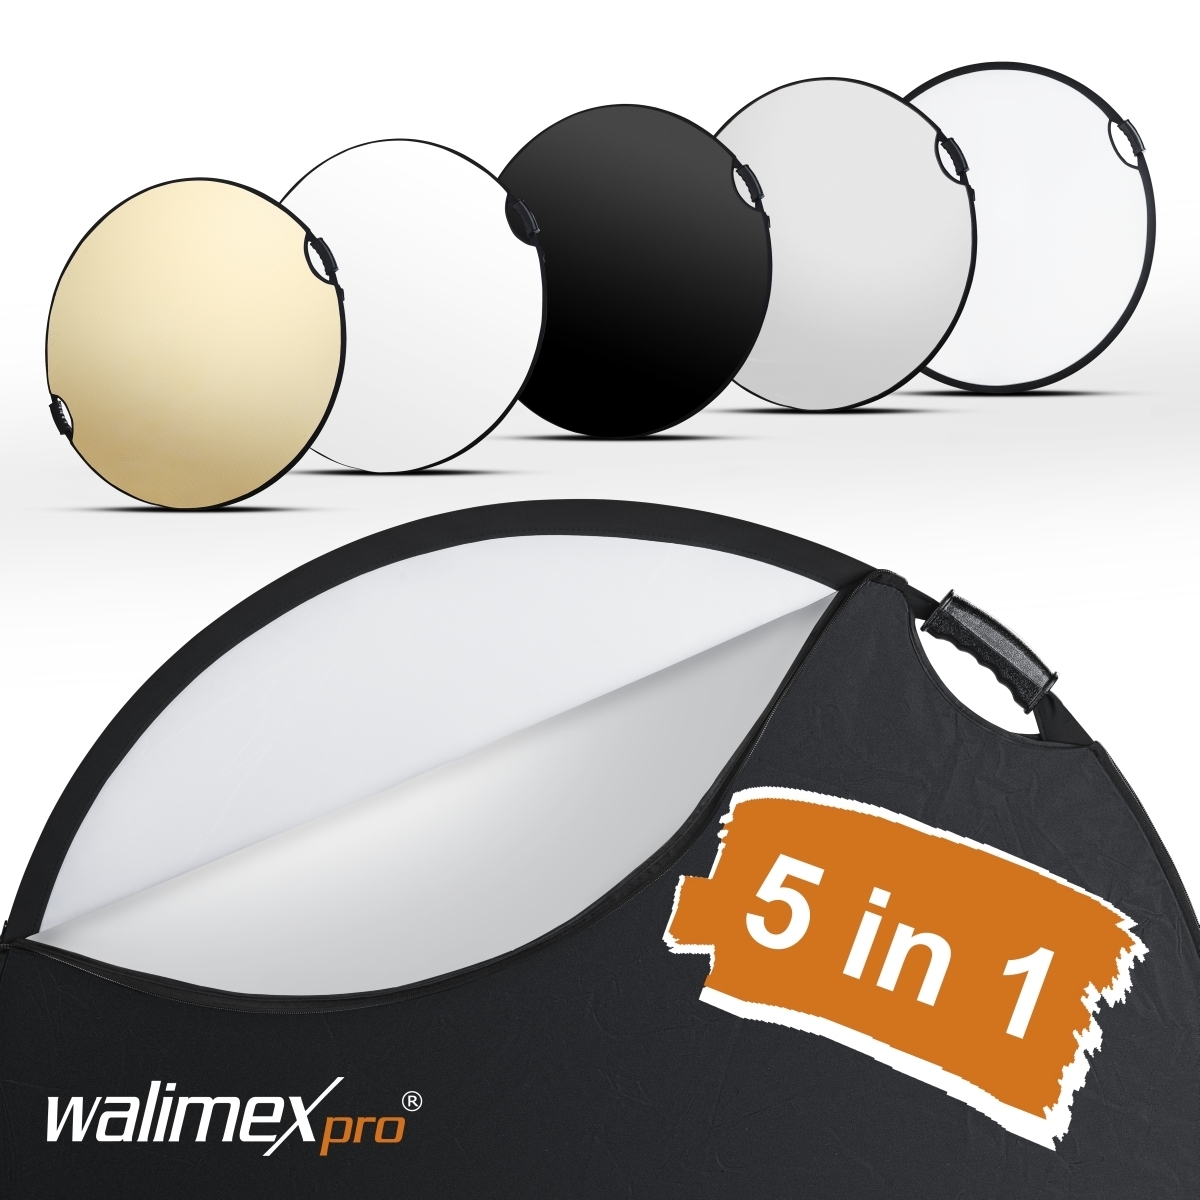 Walimex pro 5in1 riflettore pieghevole wavy comfort Ø56cm con maniglie e 5 colori di riflettore